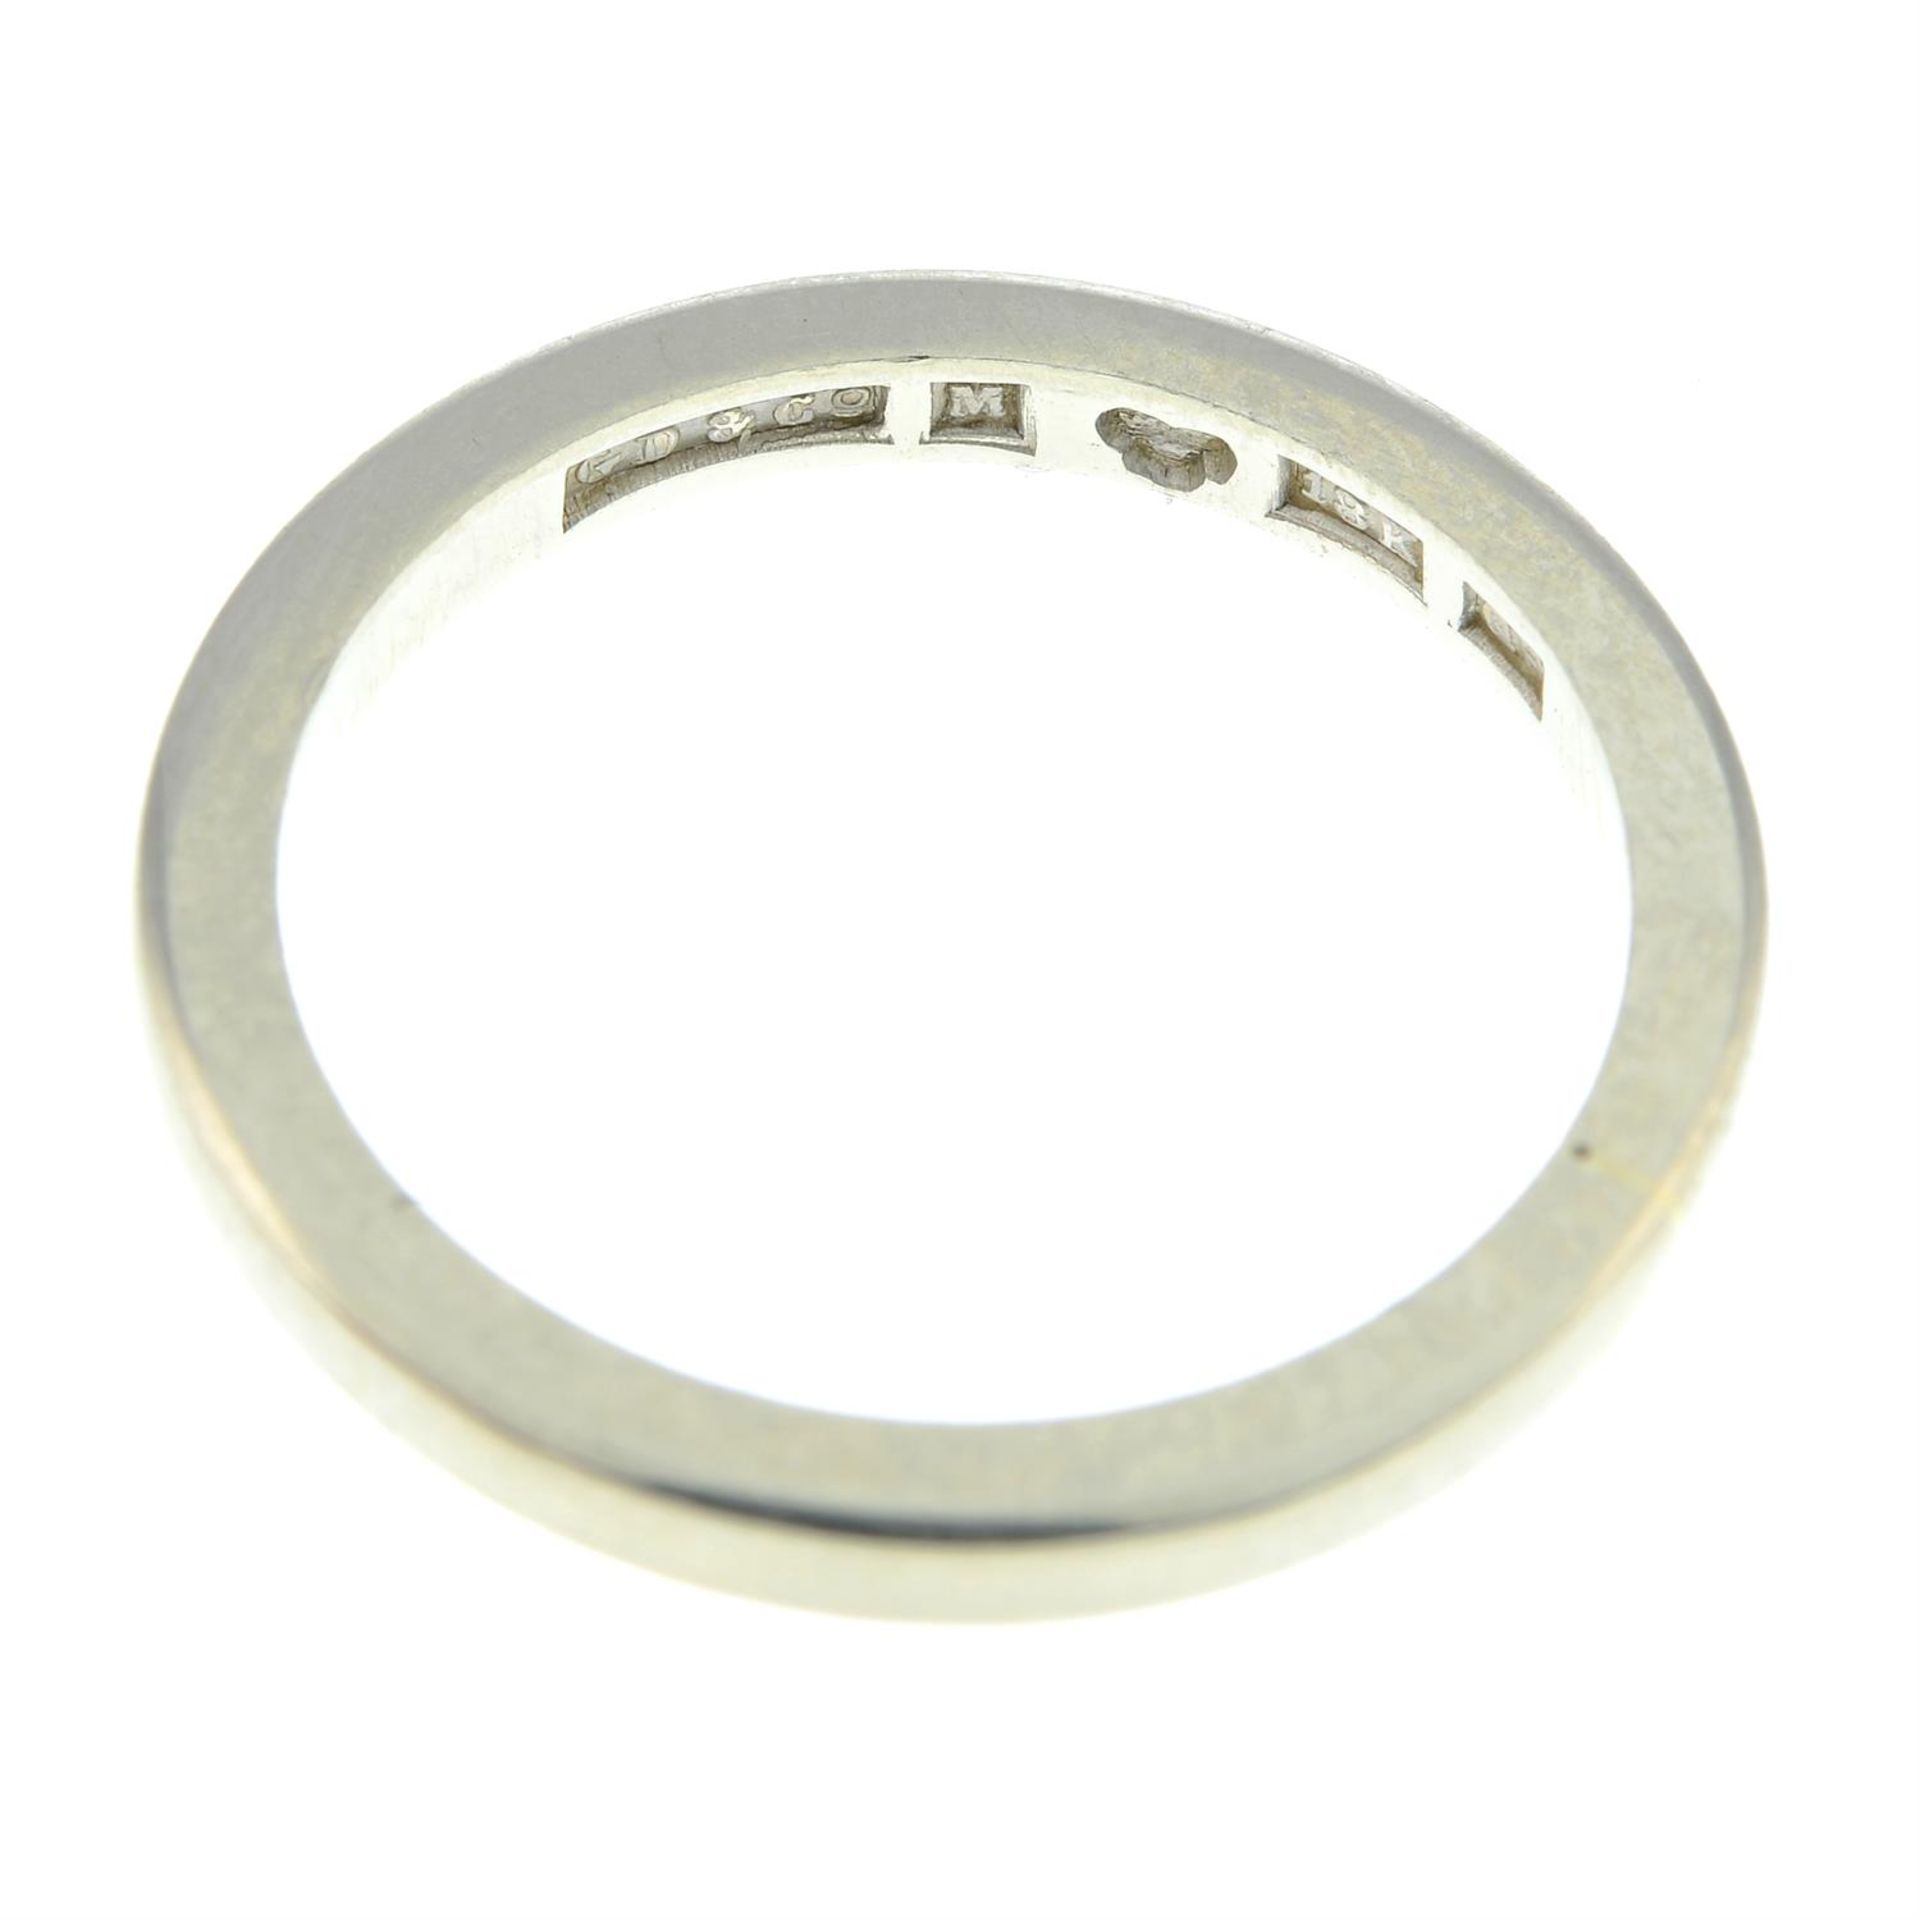 A plain band ring, by Gustav Dahlgren & Co. - Image 2 of 2